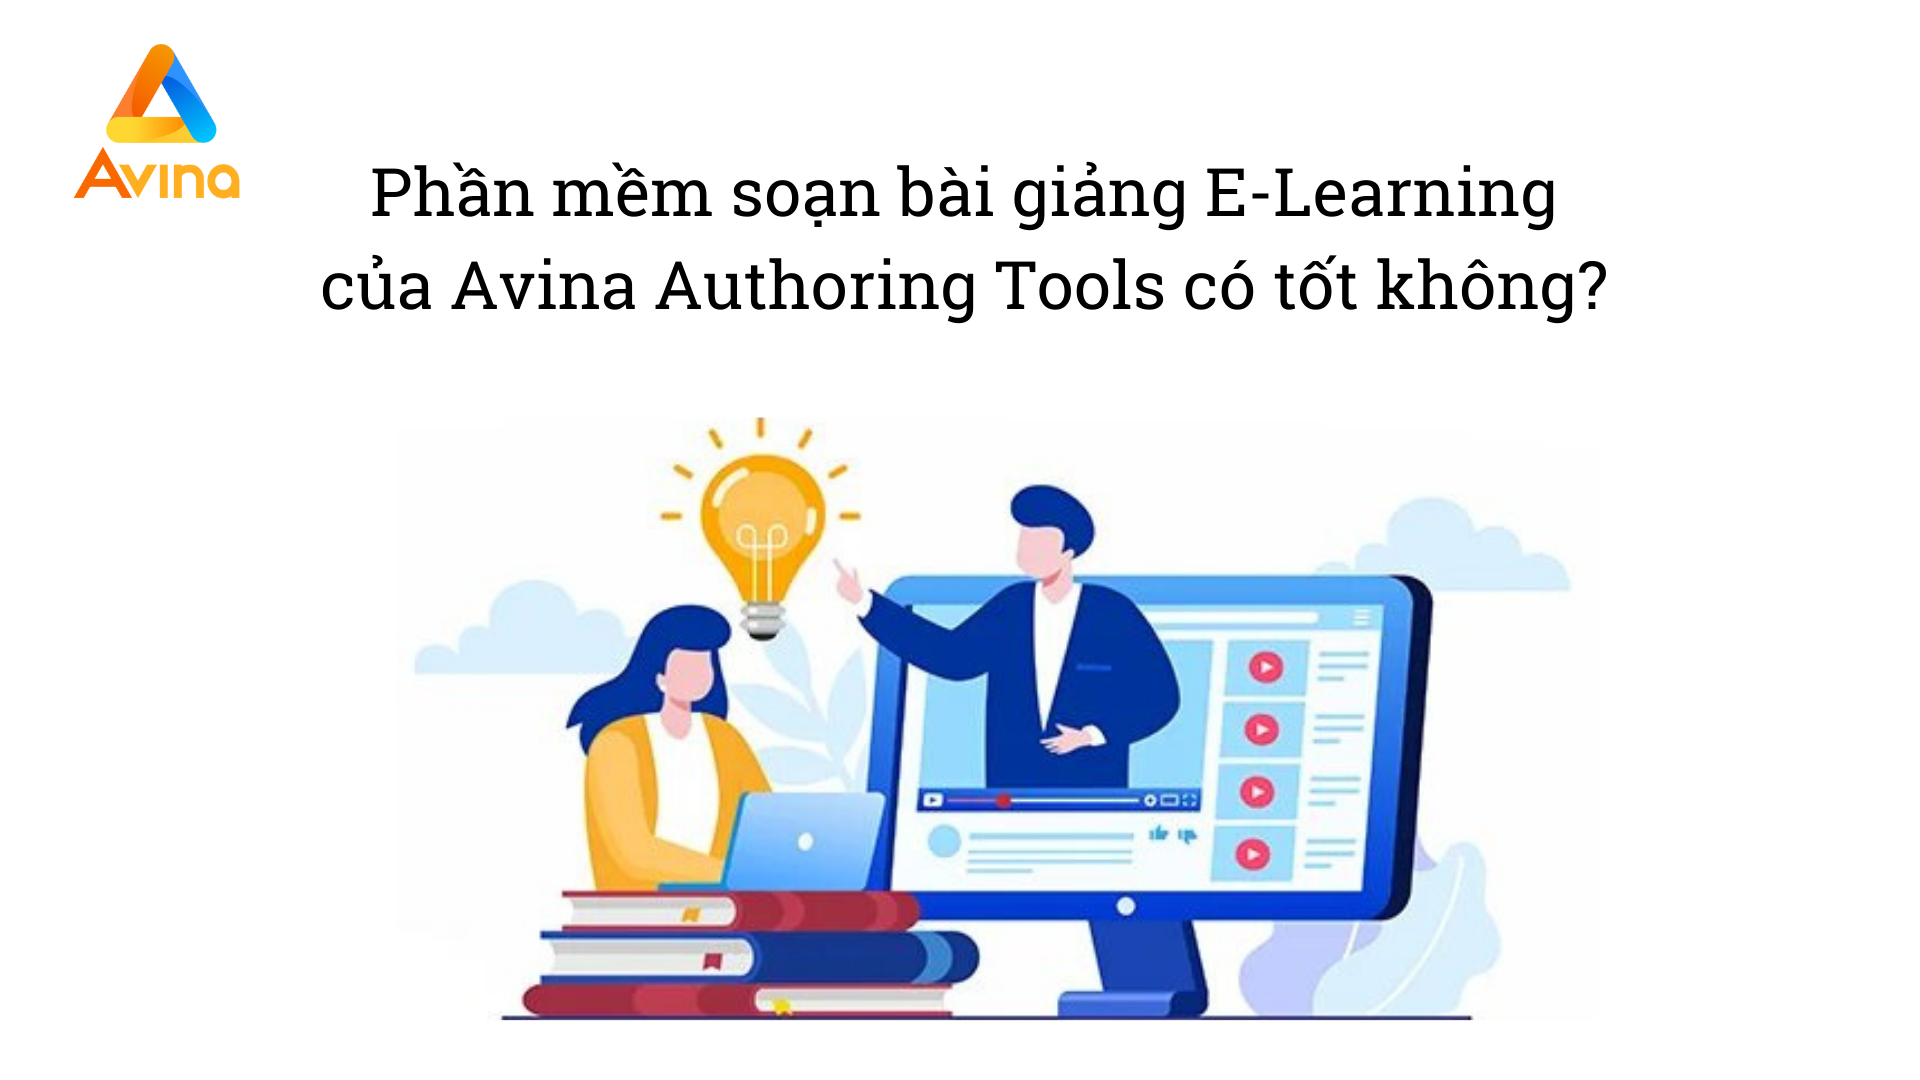 Phần mềm soạn bài giảng E-Learning của Avina Authoring Tools